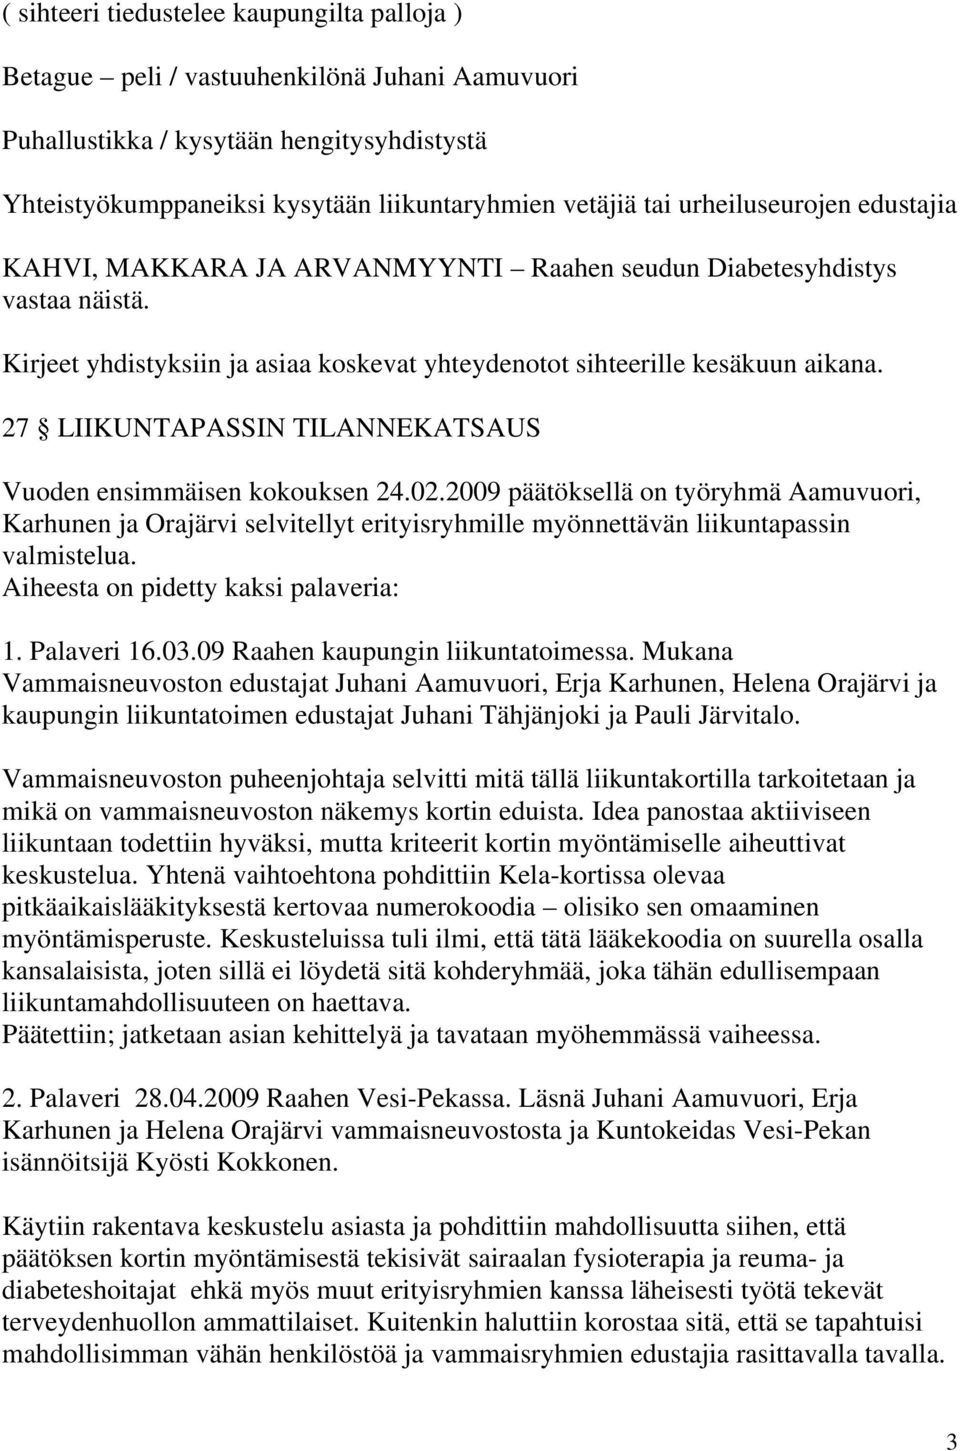 27 LIIKUNTAPASSIN TILANNEKATSAUS Vuoden ensimmäisen kokouksen 24.02.2009 päätöksellä on työryhmä Aamuvuori, Karhunen ja Orajärvi selvitellyt erityisryhmille myönnettävän liikuntapassin valmistelua.